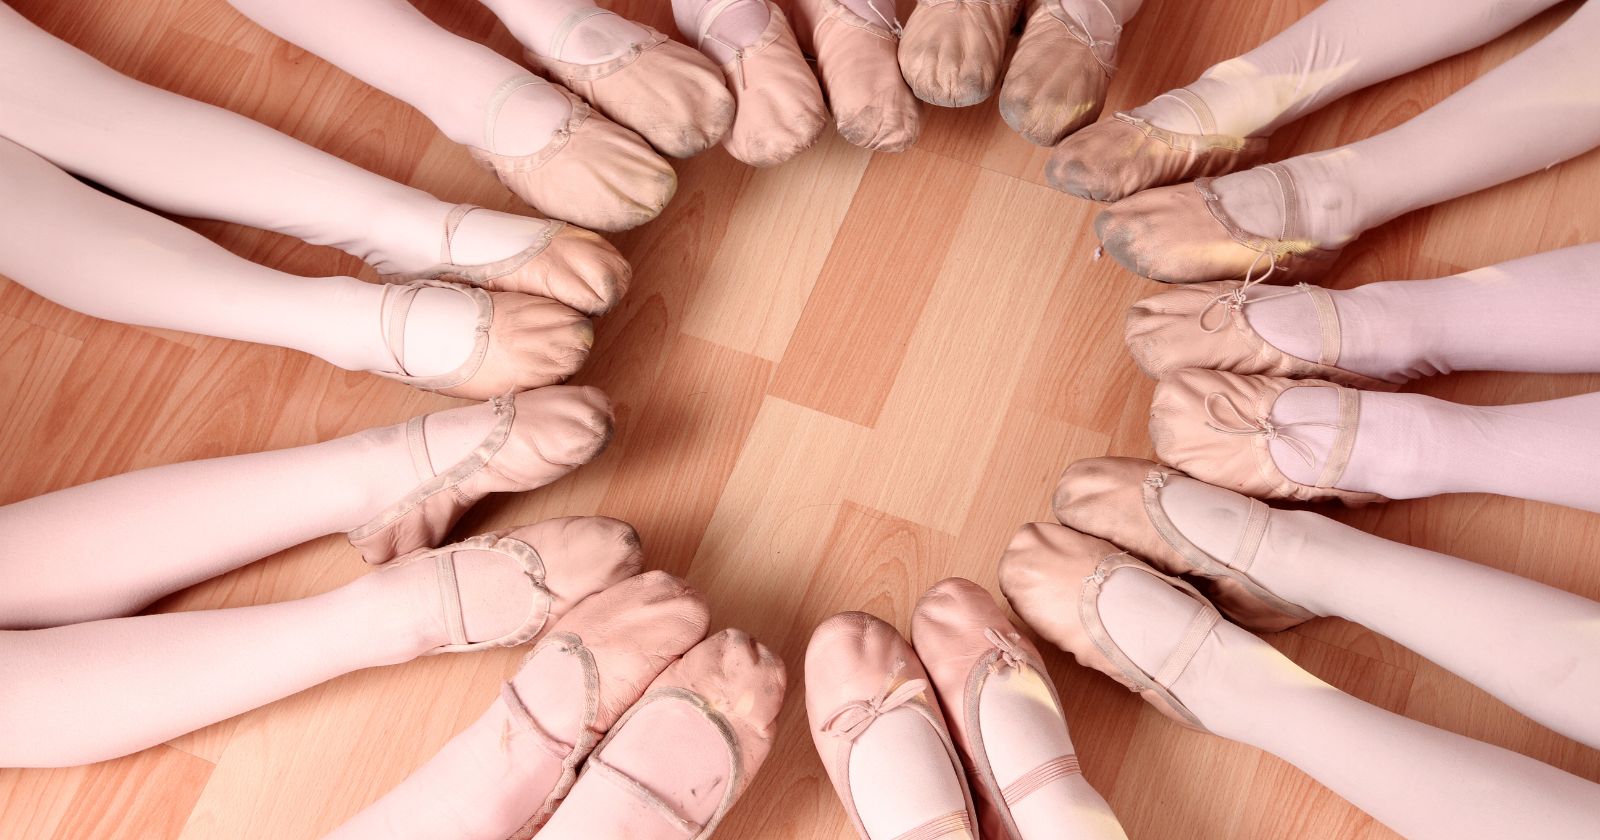 sickled feet in ballet